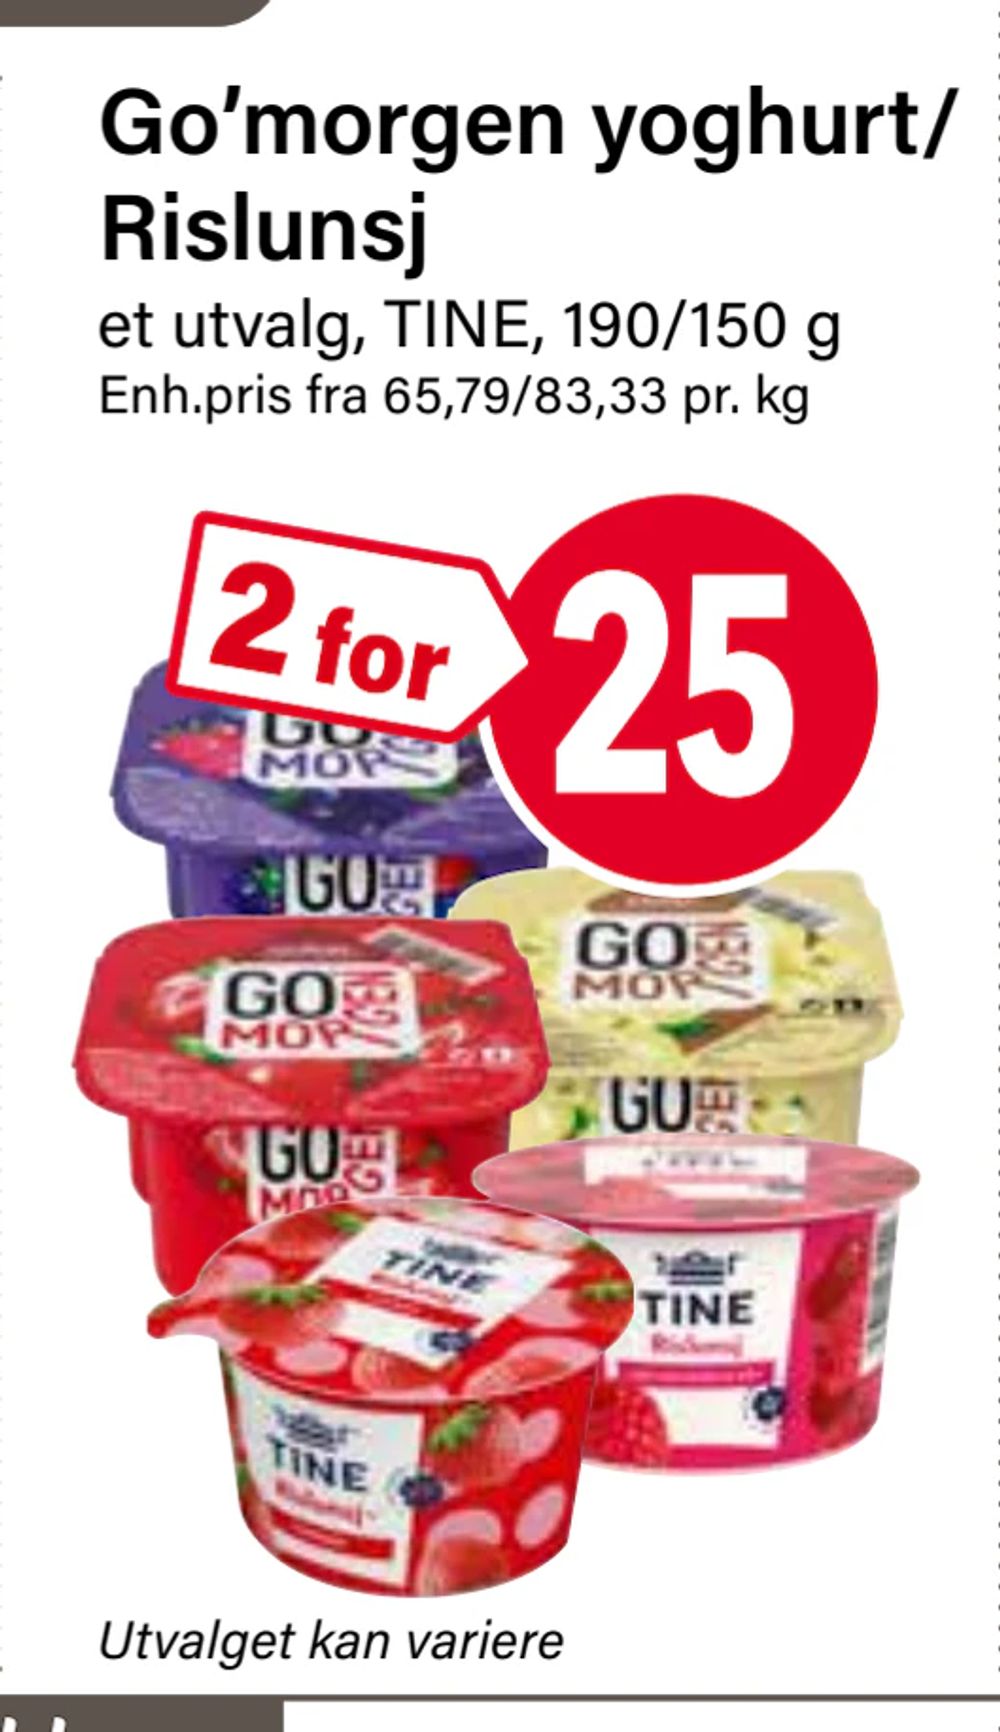 Tilbud på Go’morgen yoghurt/ Rislunsj fra Nærbutikken til 25 kr